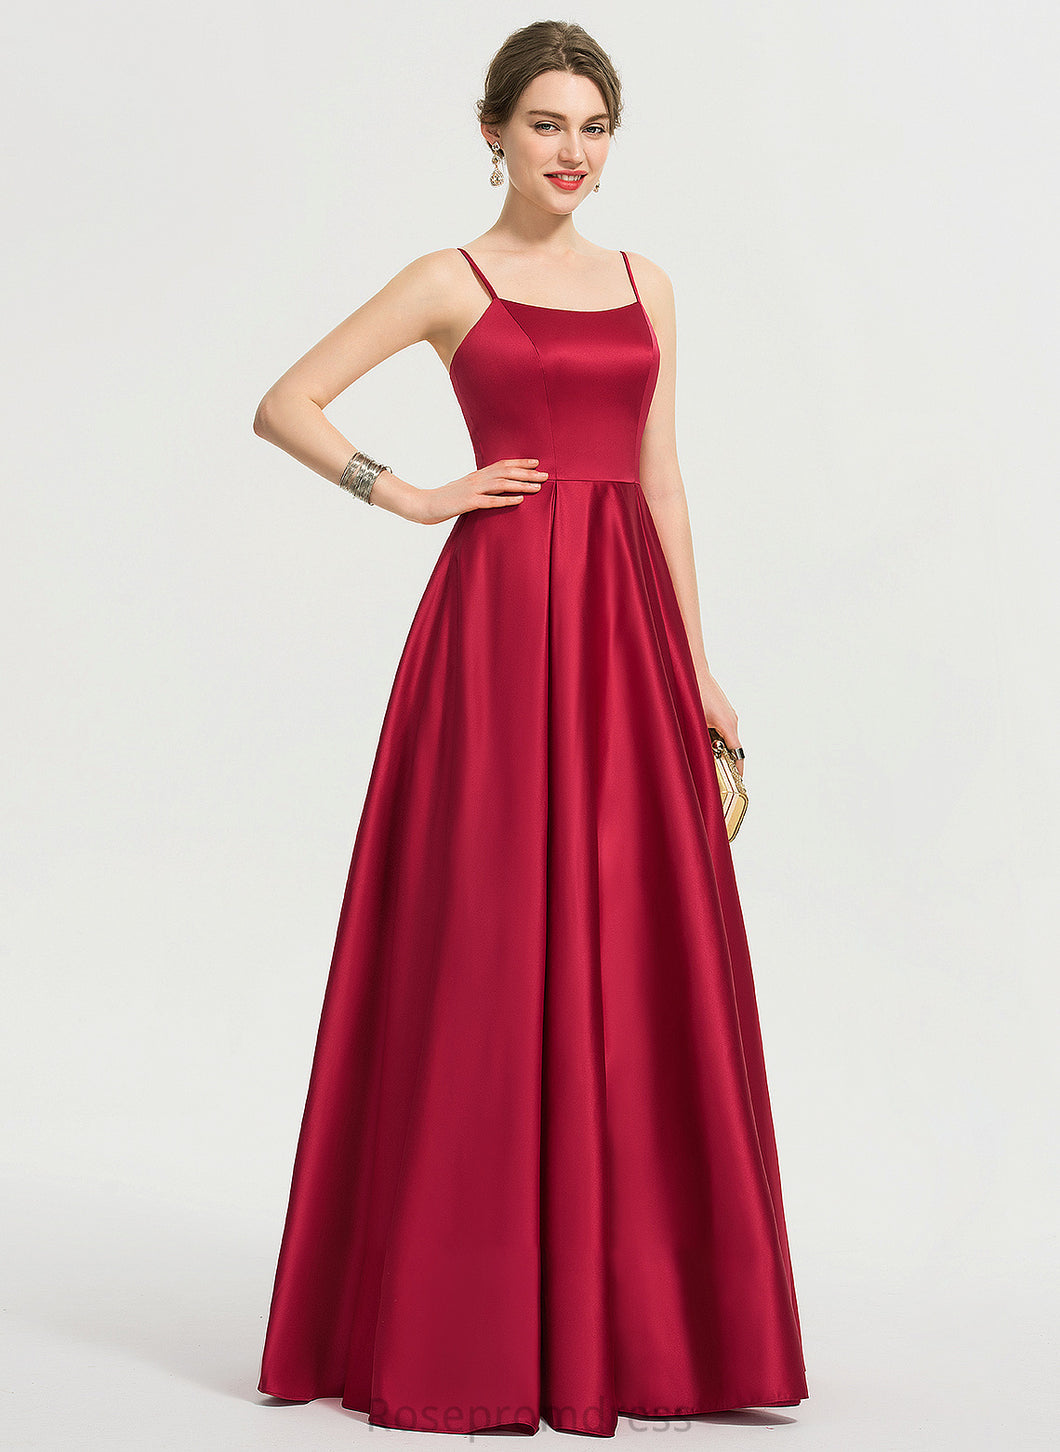 Satin SquareNeckline A-Line Neckline Silhouette Sleeve Length Floor-Length Fabric Fatima Straps Natural Waist Bridesmaid Dresses